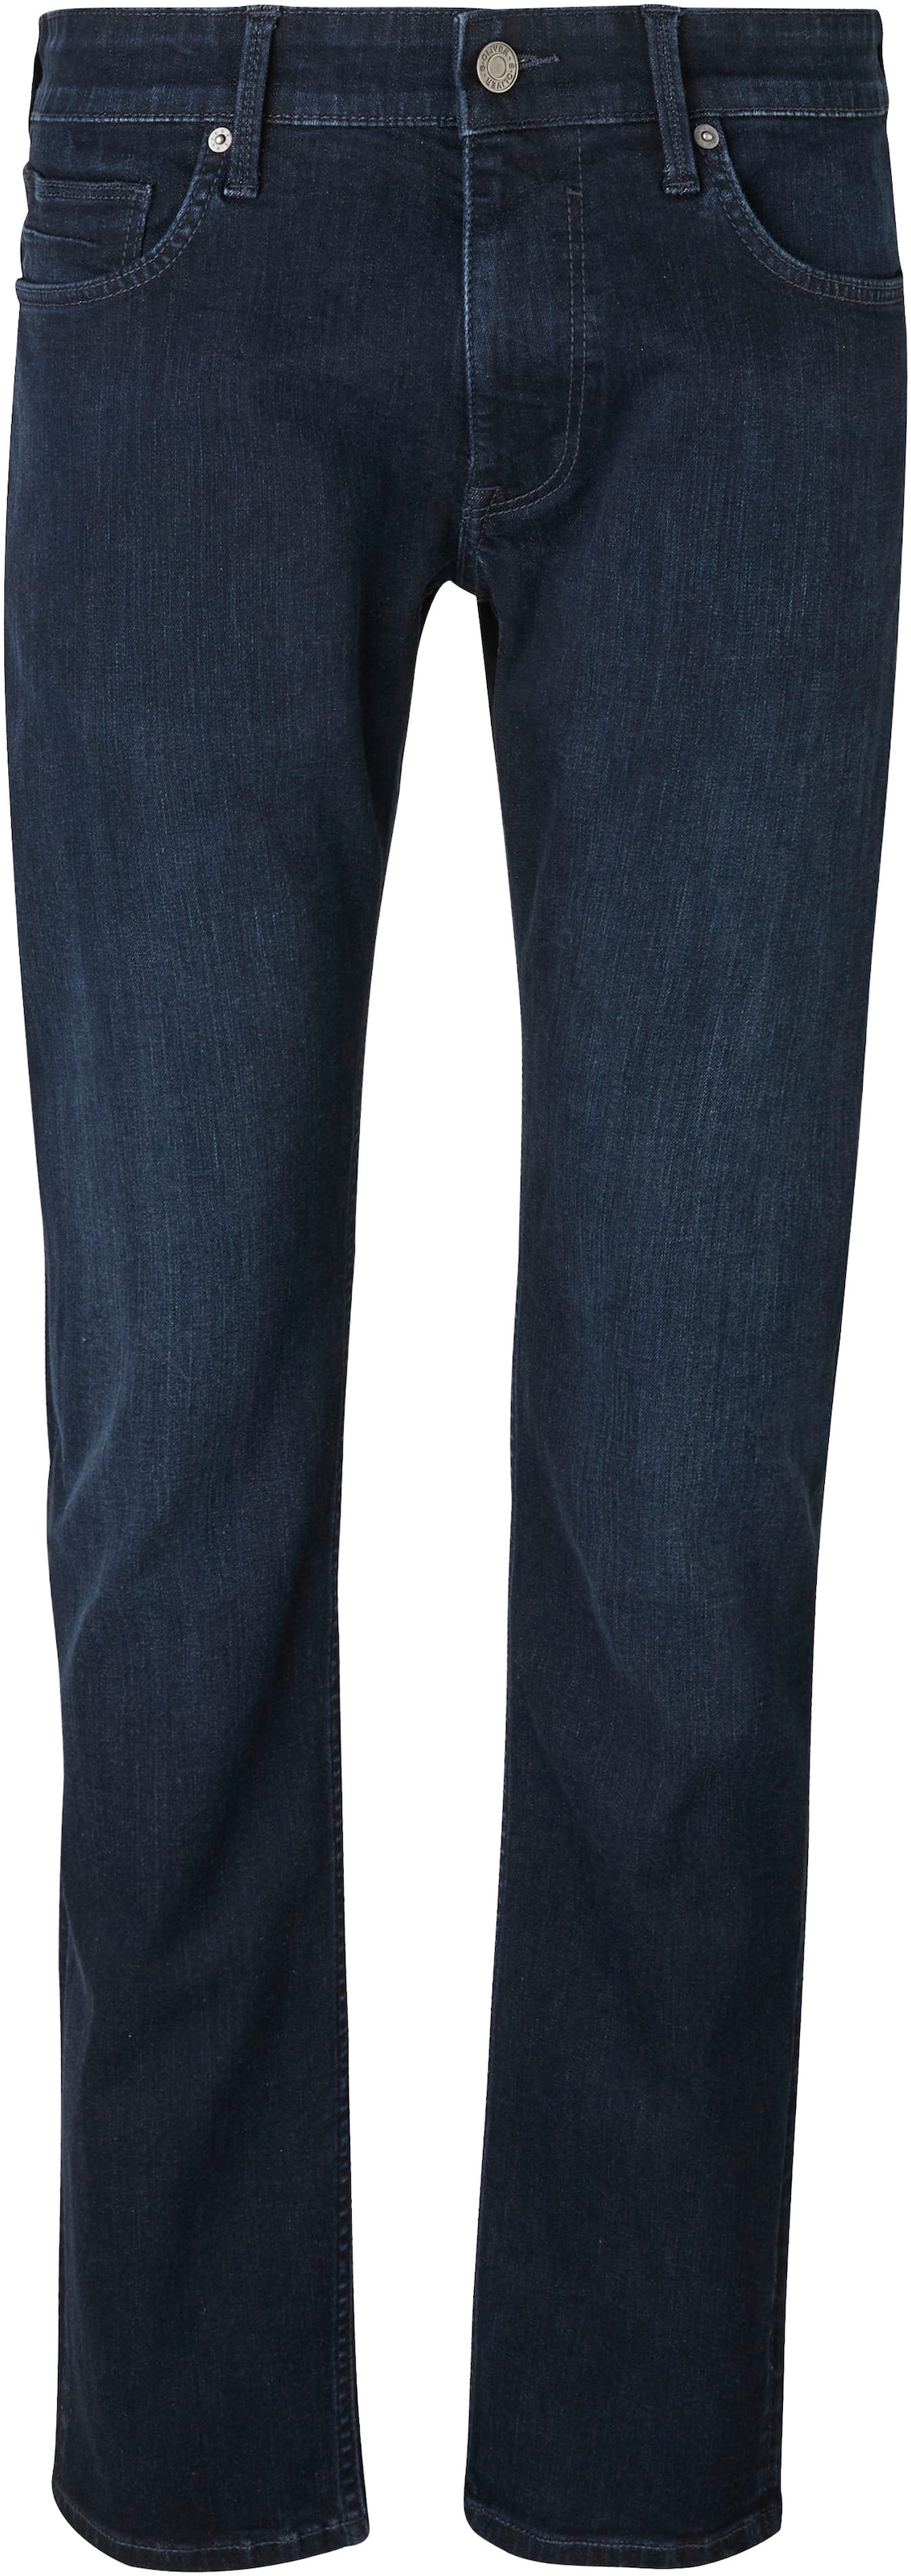 Bequeme Jeans, mit Gesäss- und Eingrifftaschen